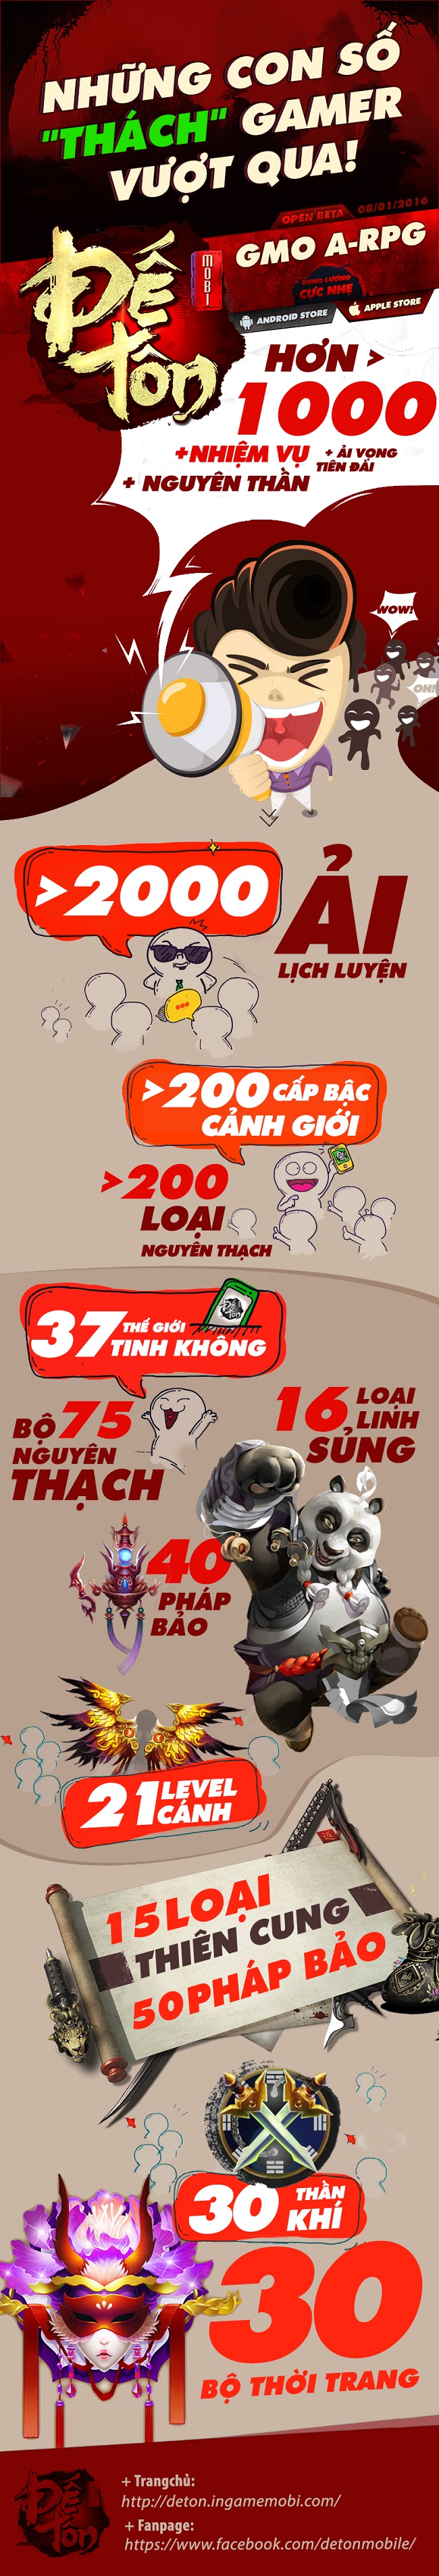 Infographics - Đế Tôn Mobi và những con số 'thách' người chơi vượt qua